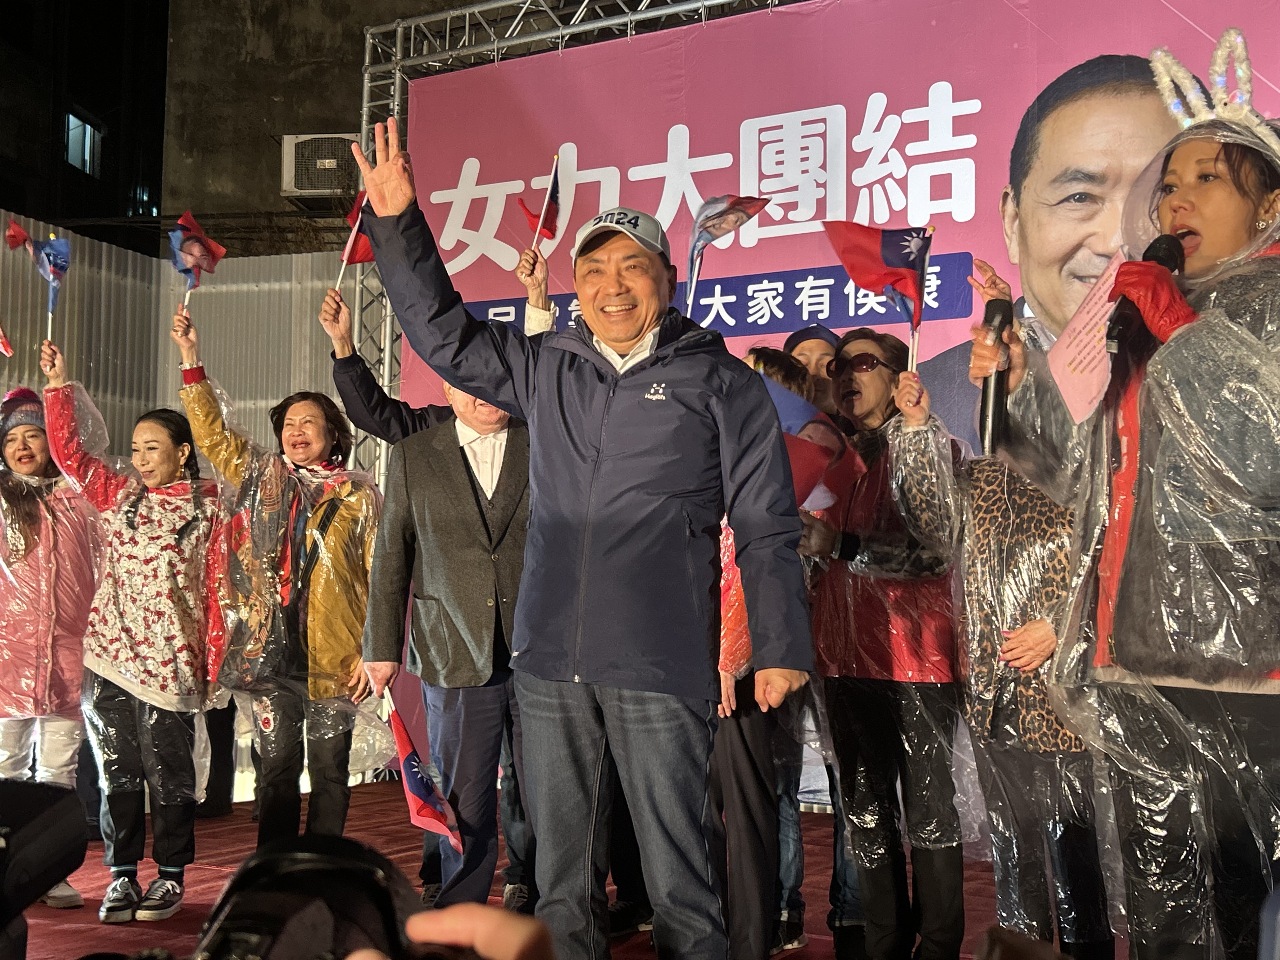 支持者不畏低溫力挺 侯友宜喊總統大選後讓台灣再出發